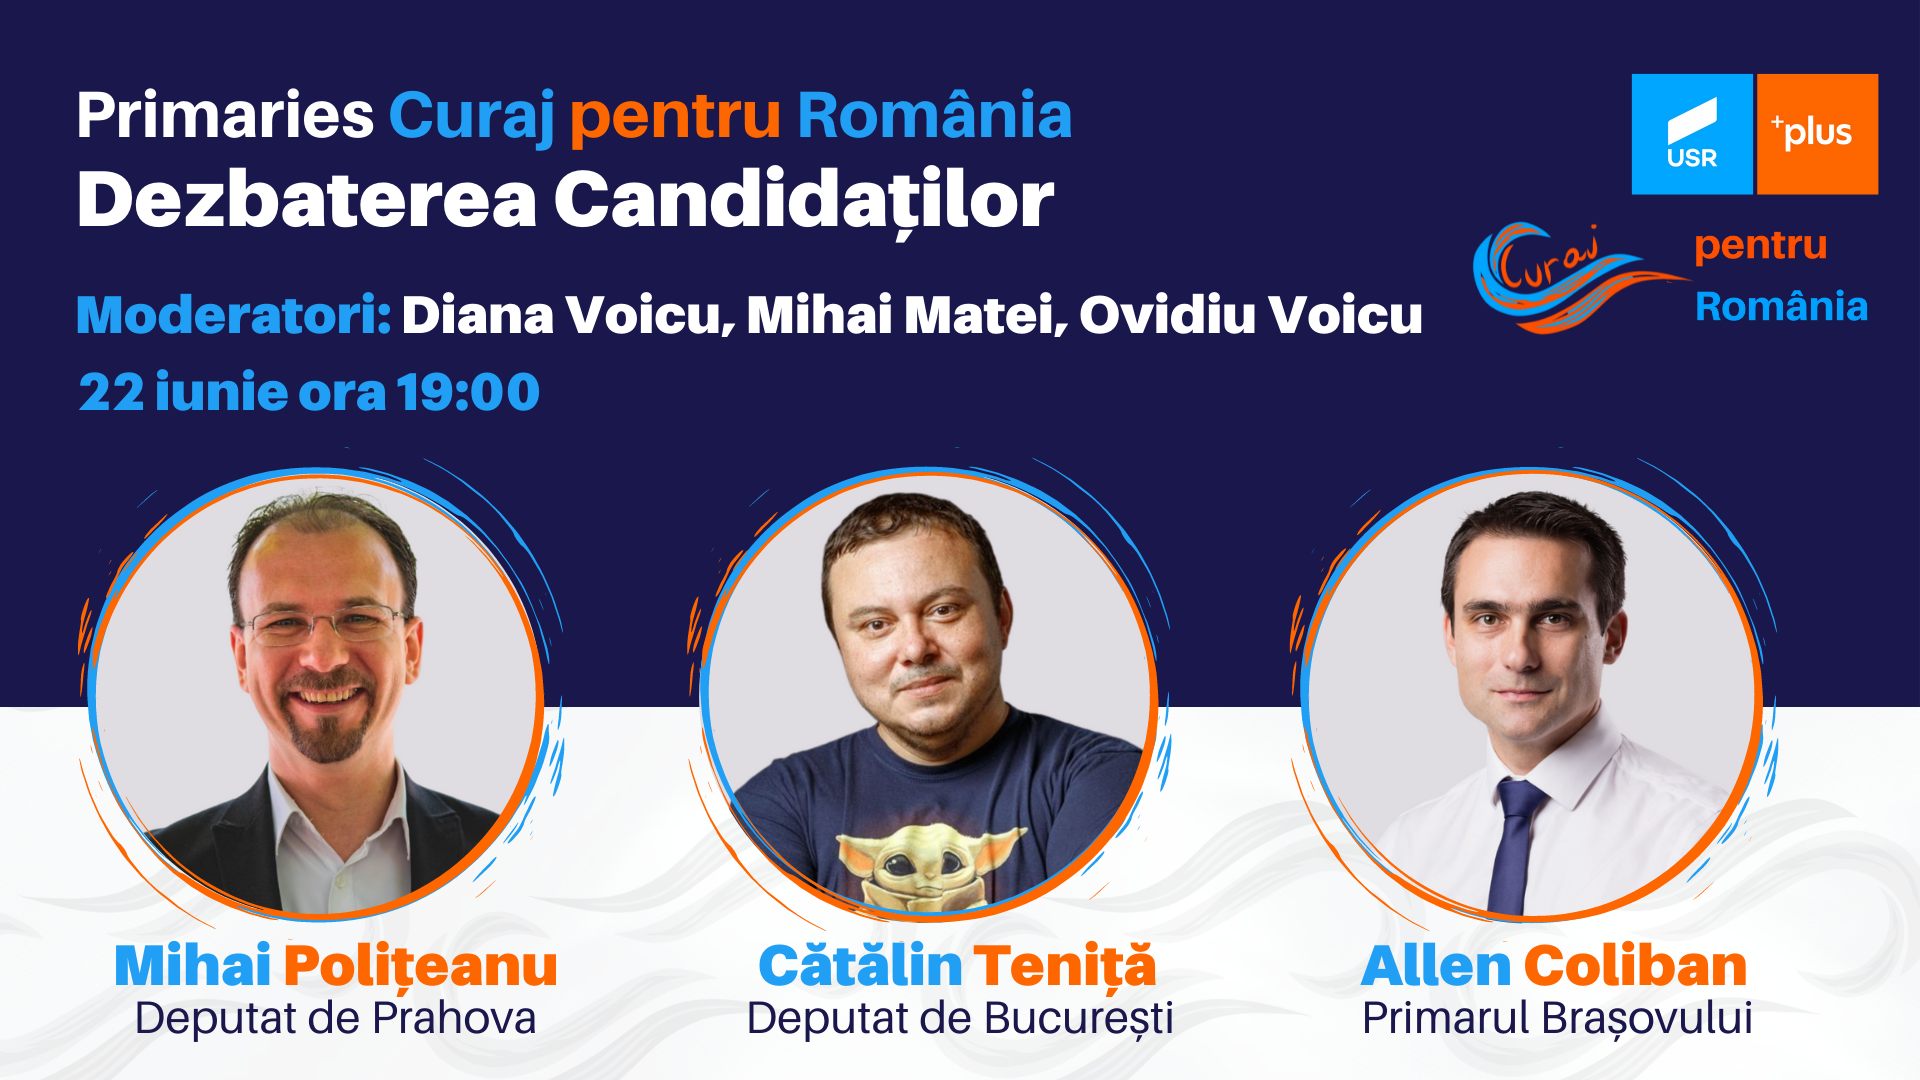 Mihai Polițeanu, Cătălin Teniță și Allen Coliban sunt înscriși în competiția internă pentru desemnarea candidatului echipei Curaj pentru președinția USR PLUS